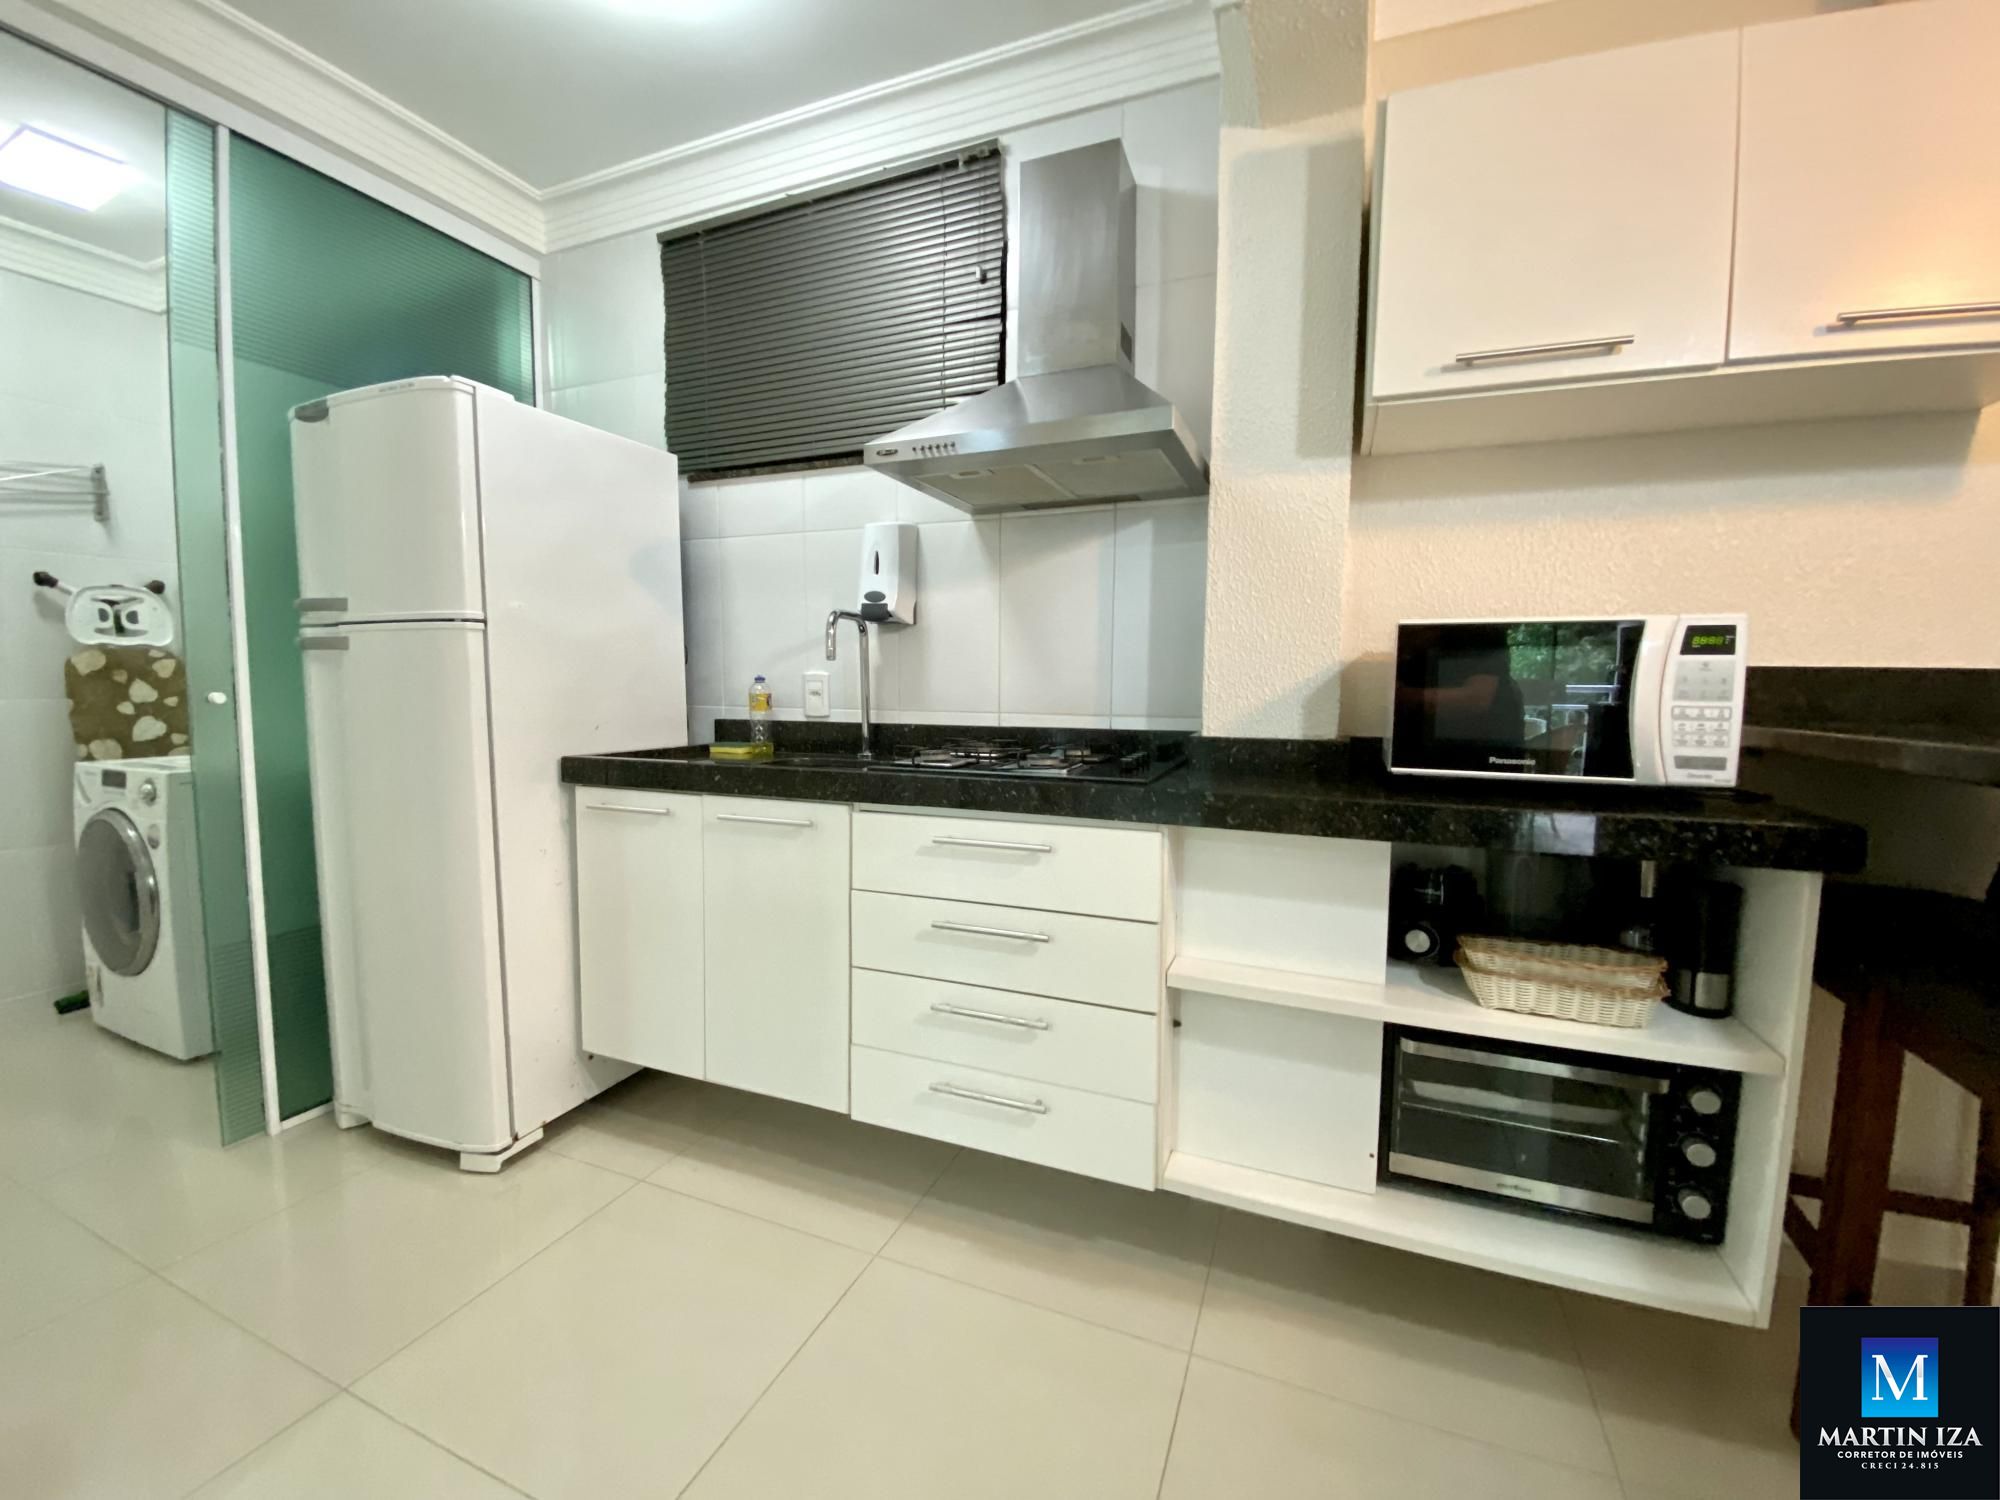 Apartamento com 1 Dormitórios para alugar, 44 m² por R$ 280,00